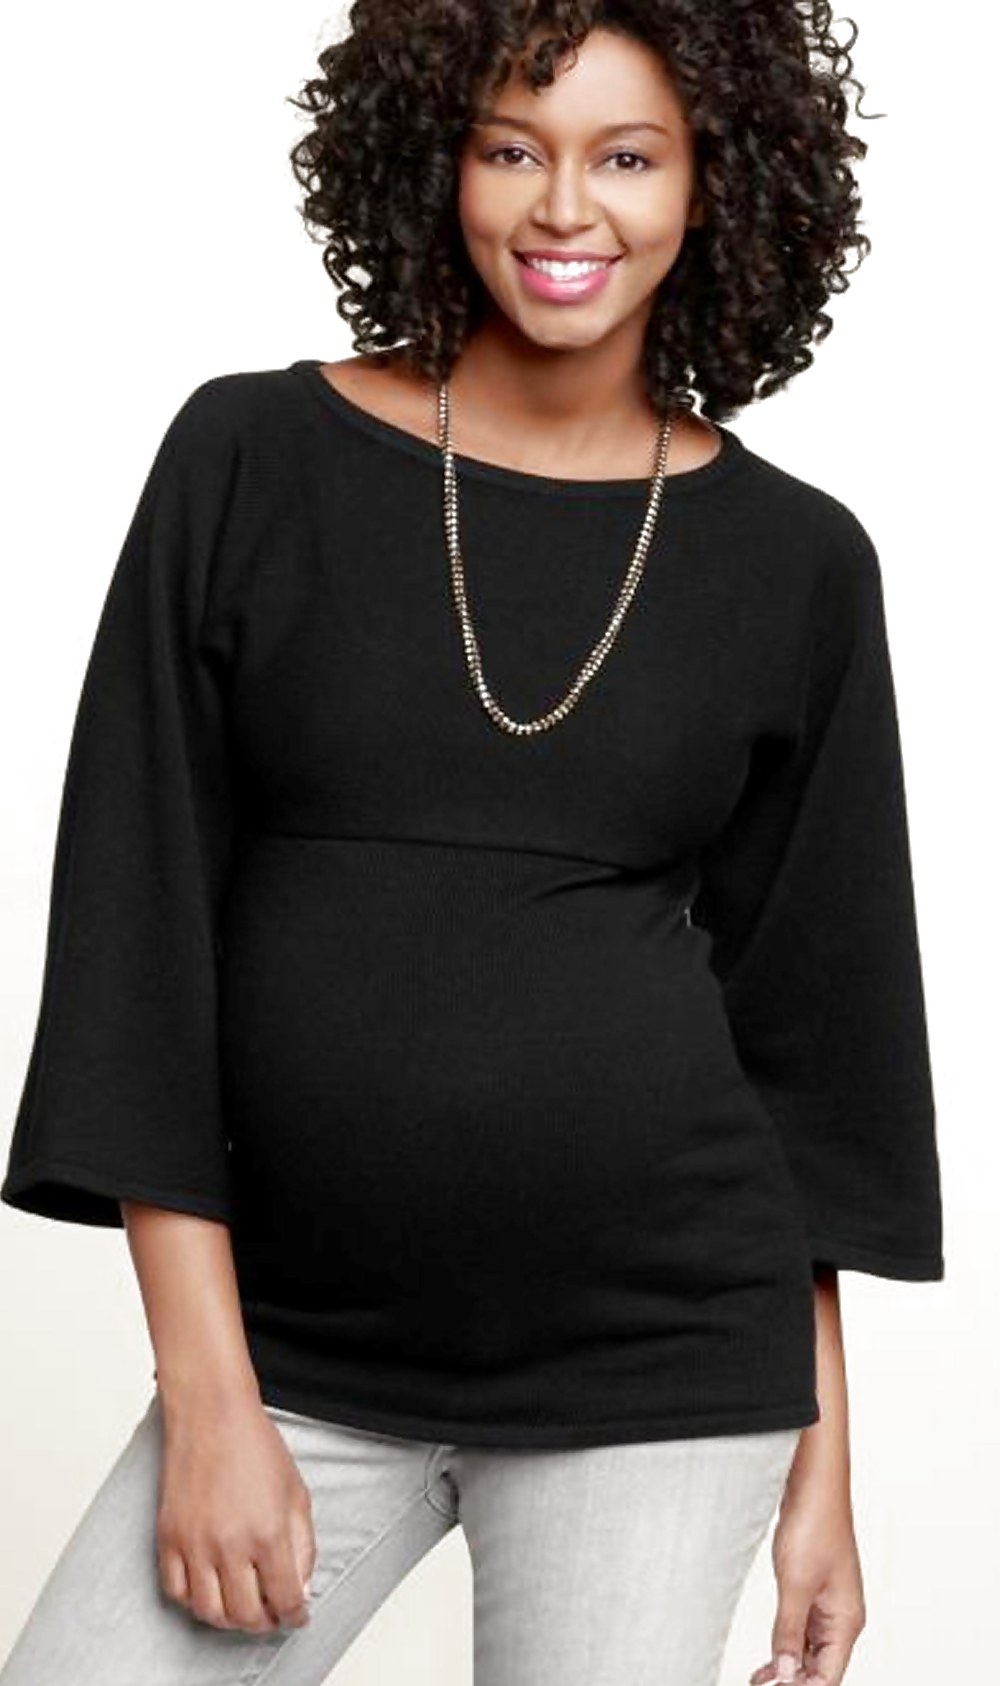 Sajata - trabajo de maternidad de la modelo negra embarazada
 #16800400